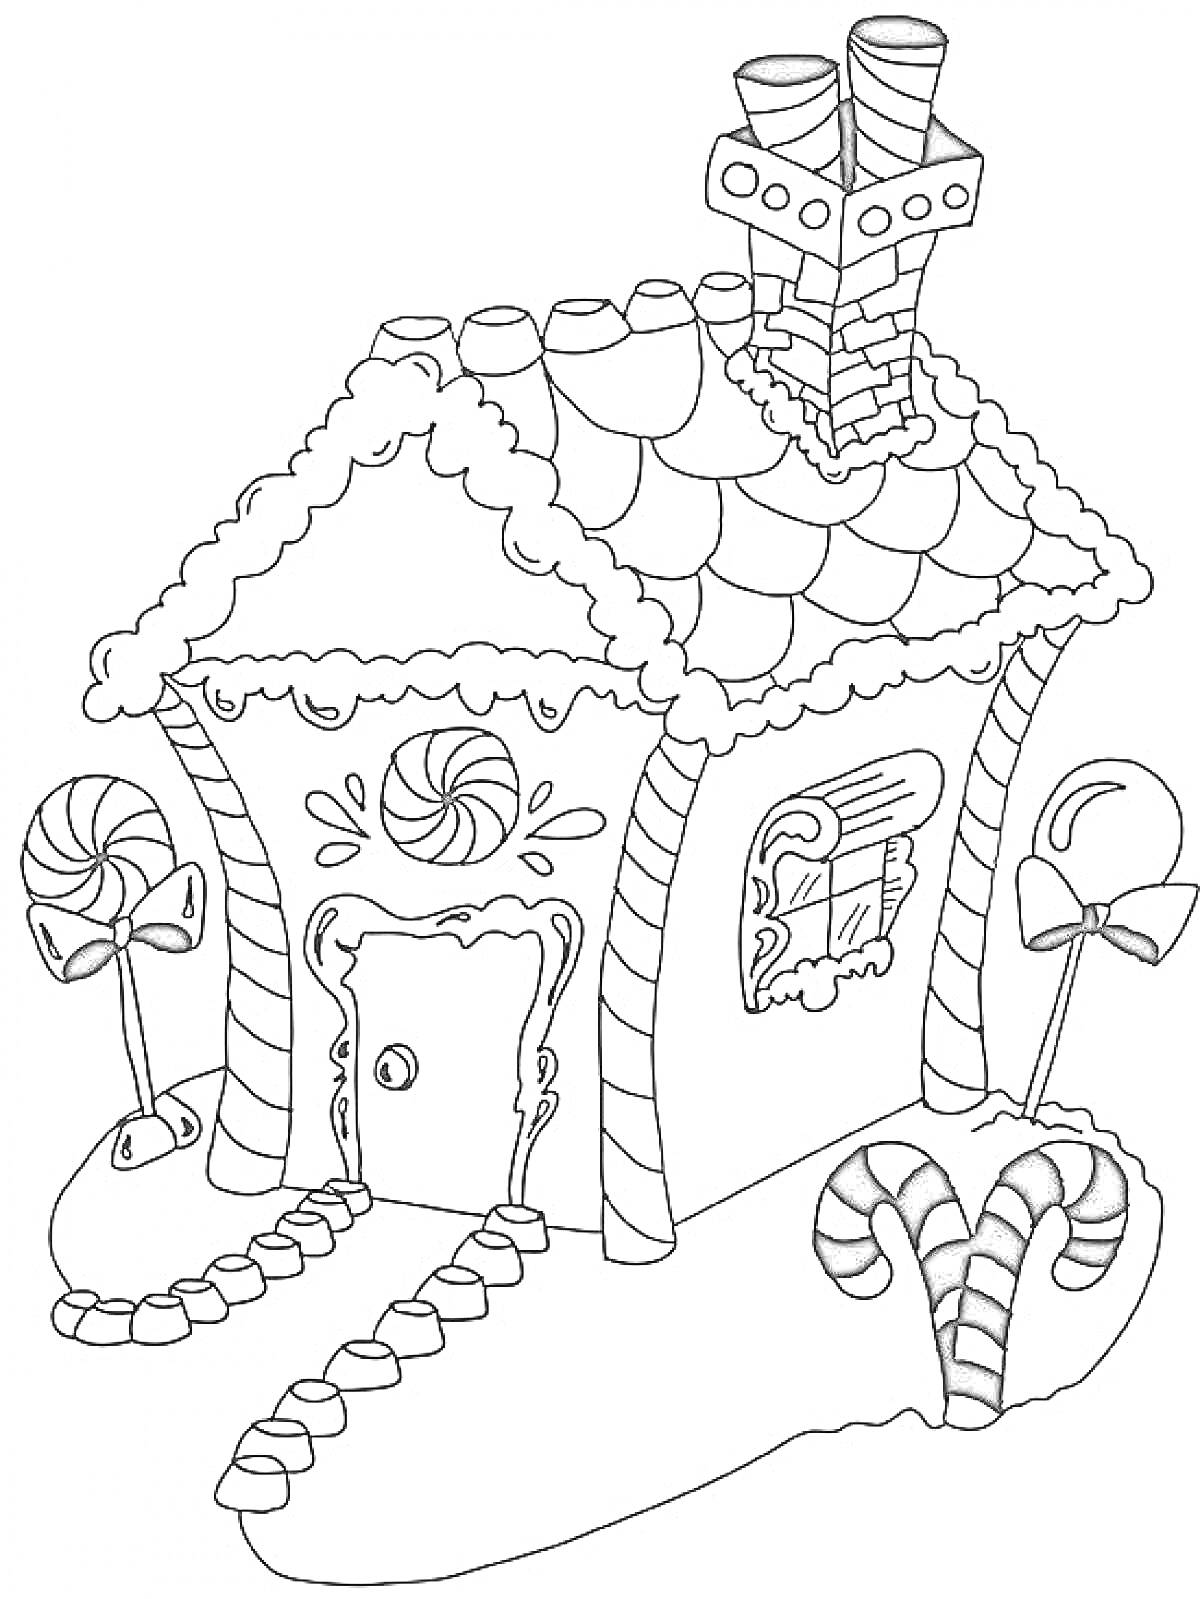 Зимний домик с леденцами, трубами и навесом, украшенный зимними и праздничными элементами.